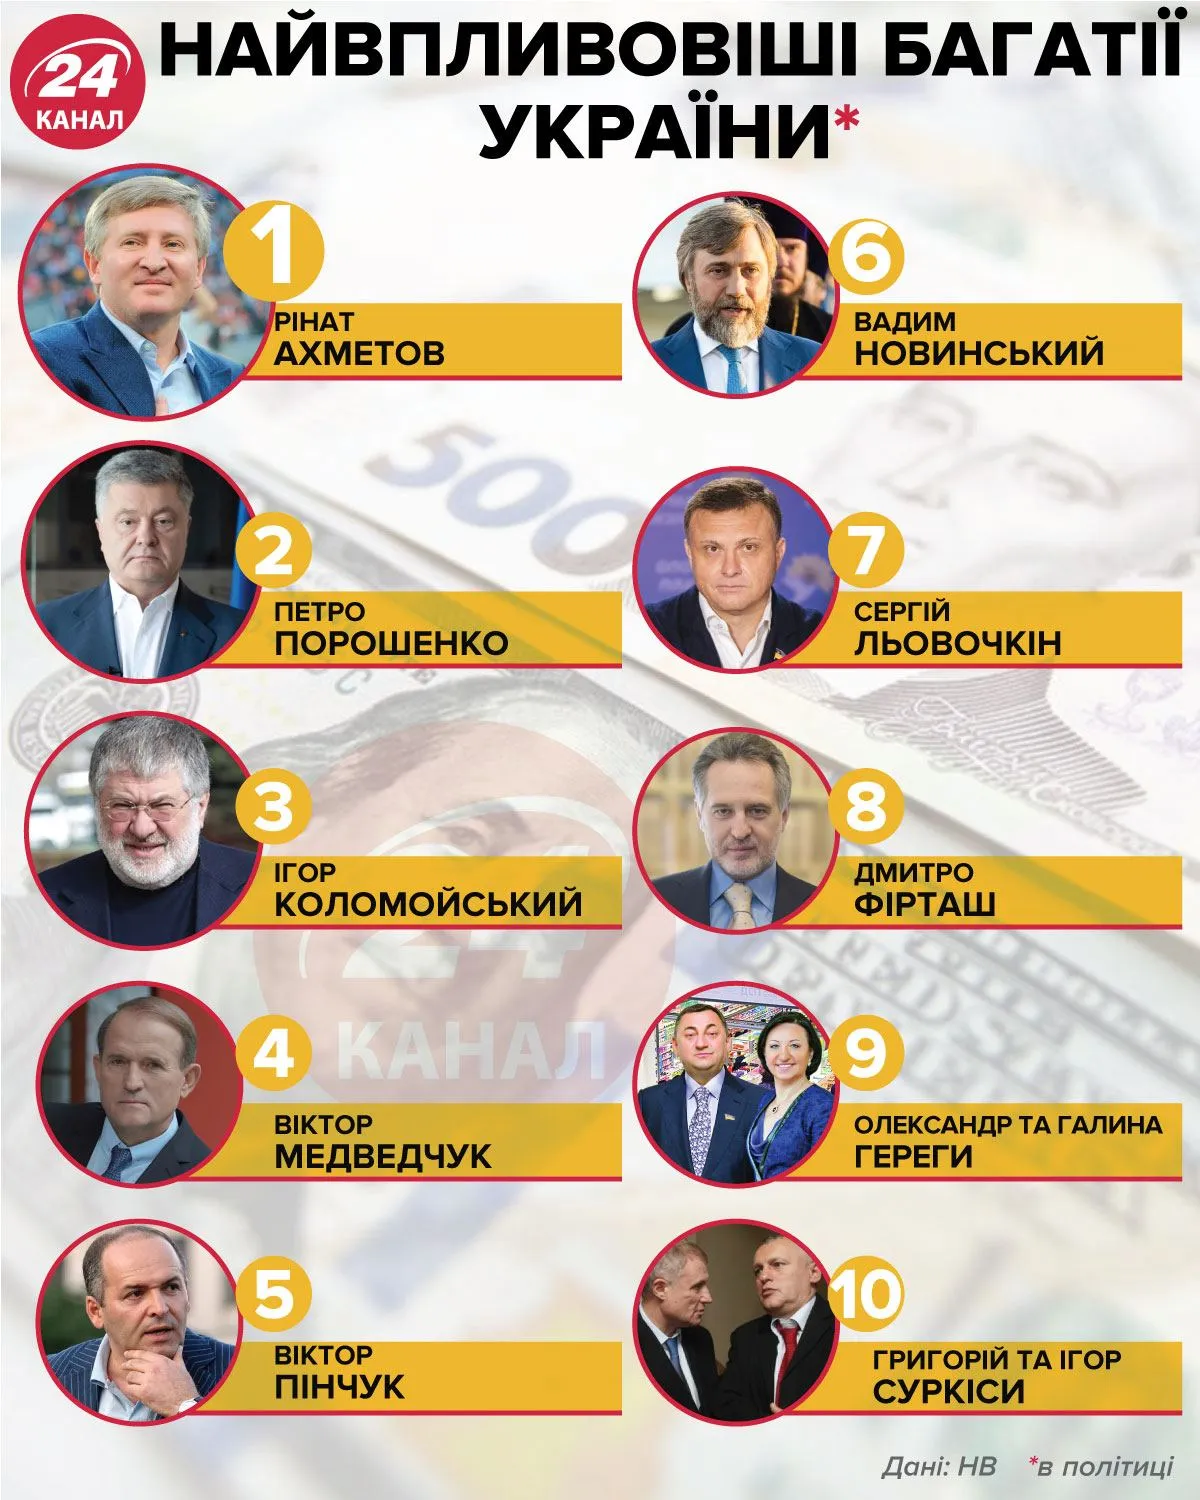 Найвпливовіші багатії України / Інфографіка 24 каналу